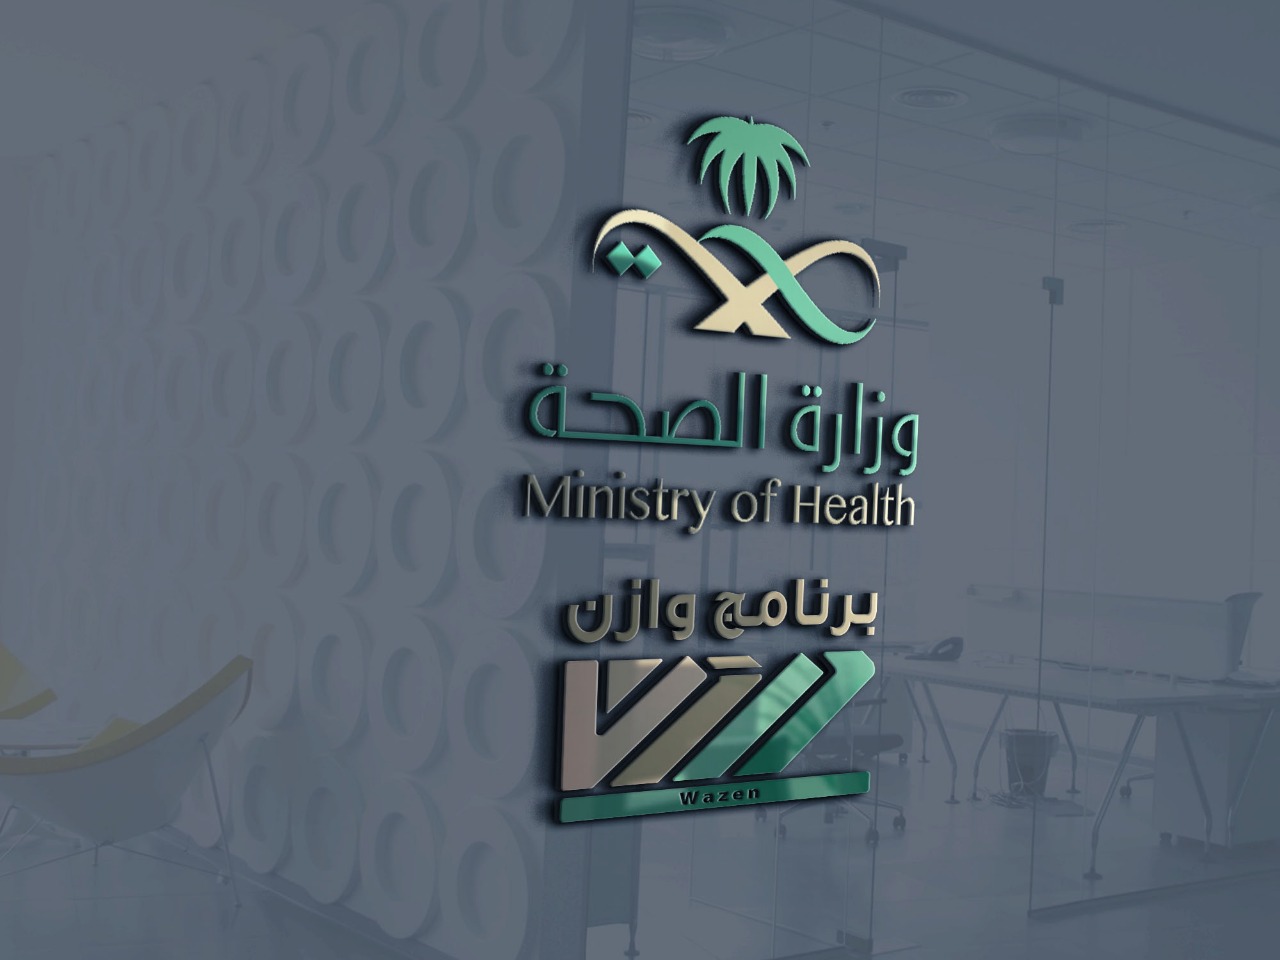 برنامج ” وازن” يختتم جولته الميدانية الثانية في منطقة جدة بزيارة 5 مستشفيات